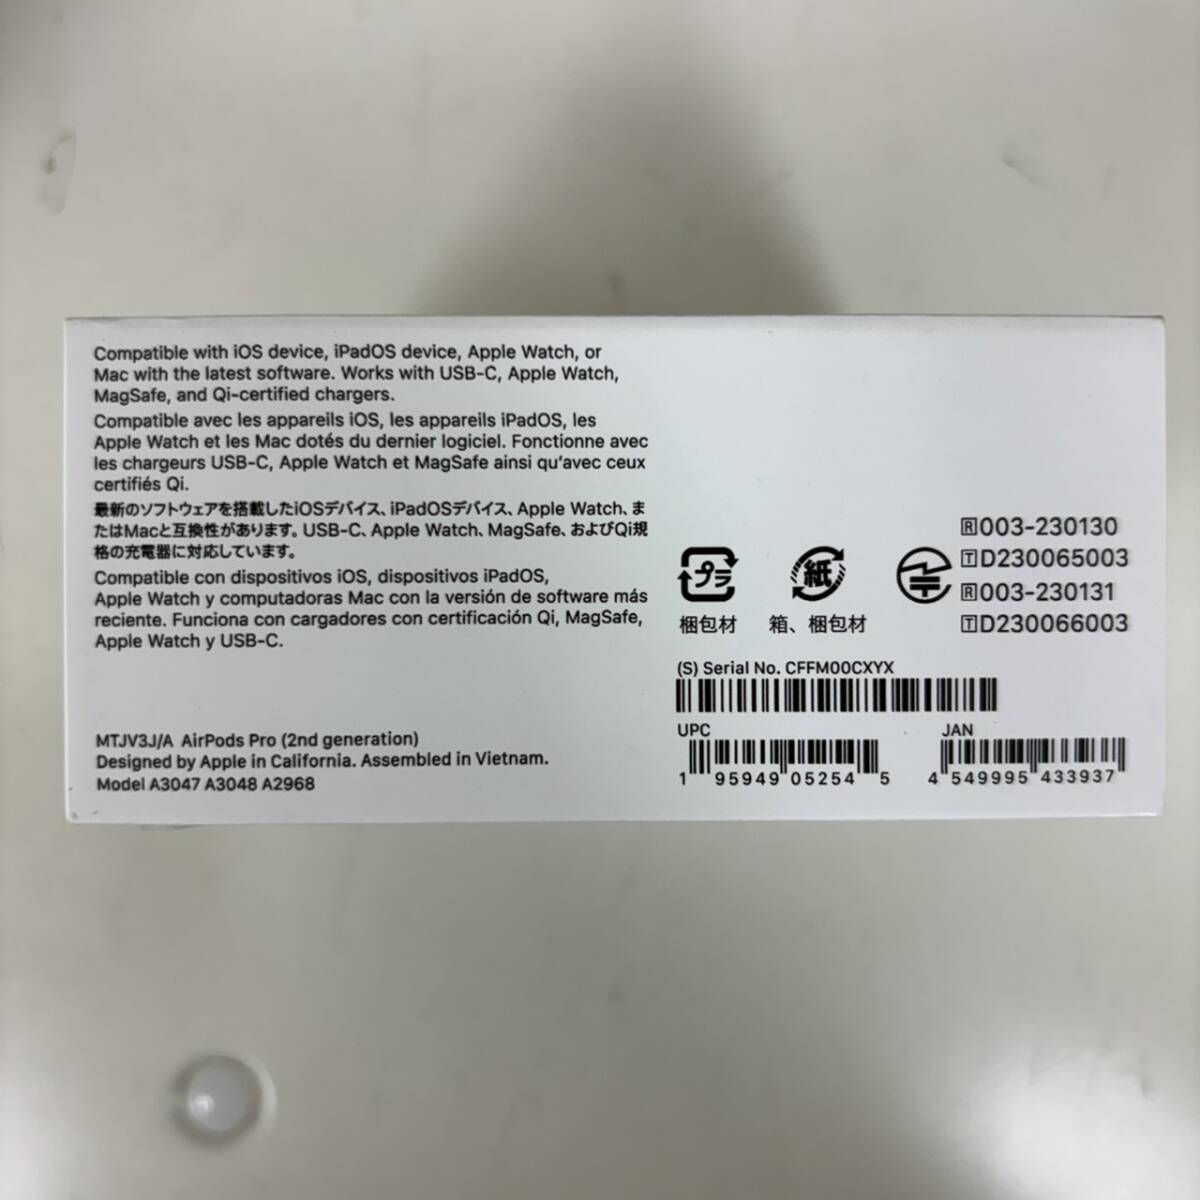 [K-28499]AirPods Pro второй поколение Apple MTJV3J/AMagSafe зарядка кейс (USB-C) имеется нераспечатанный товар 